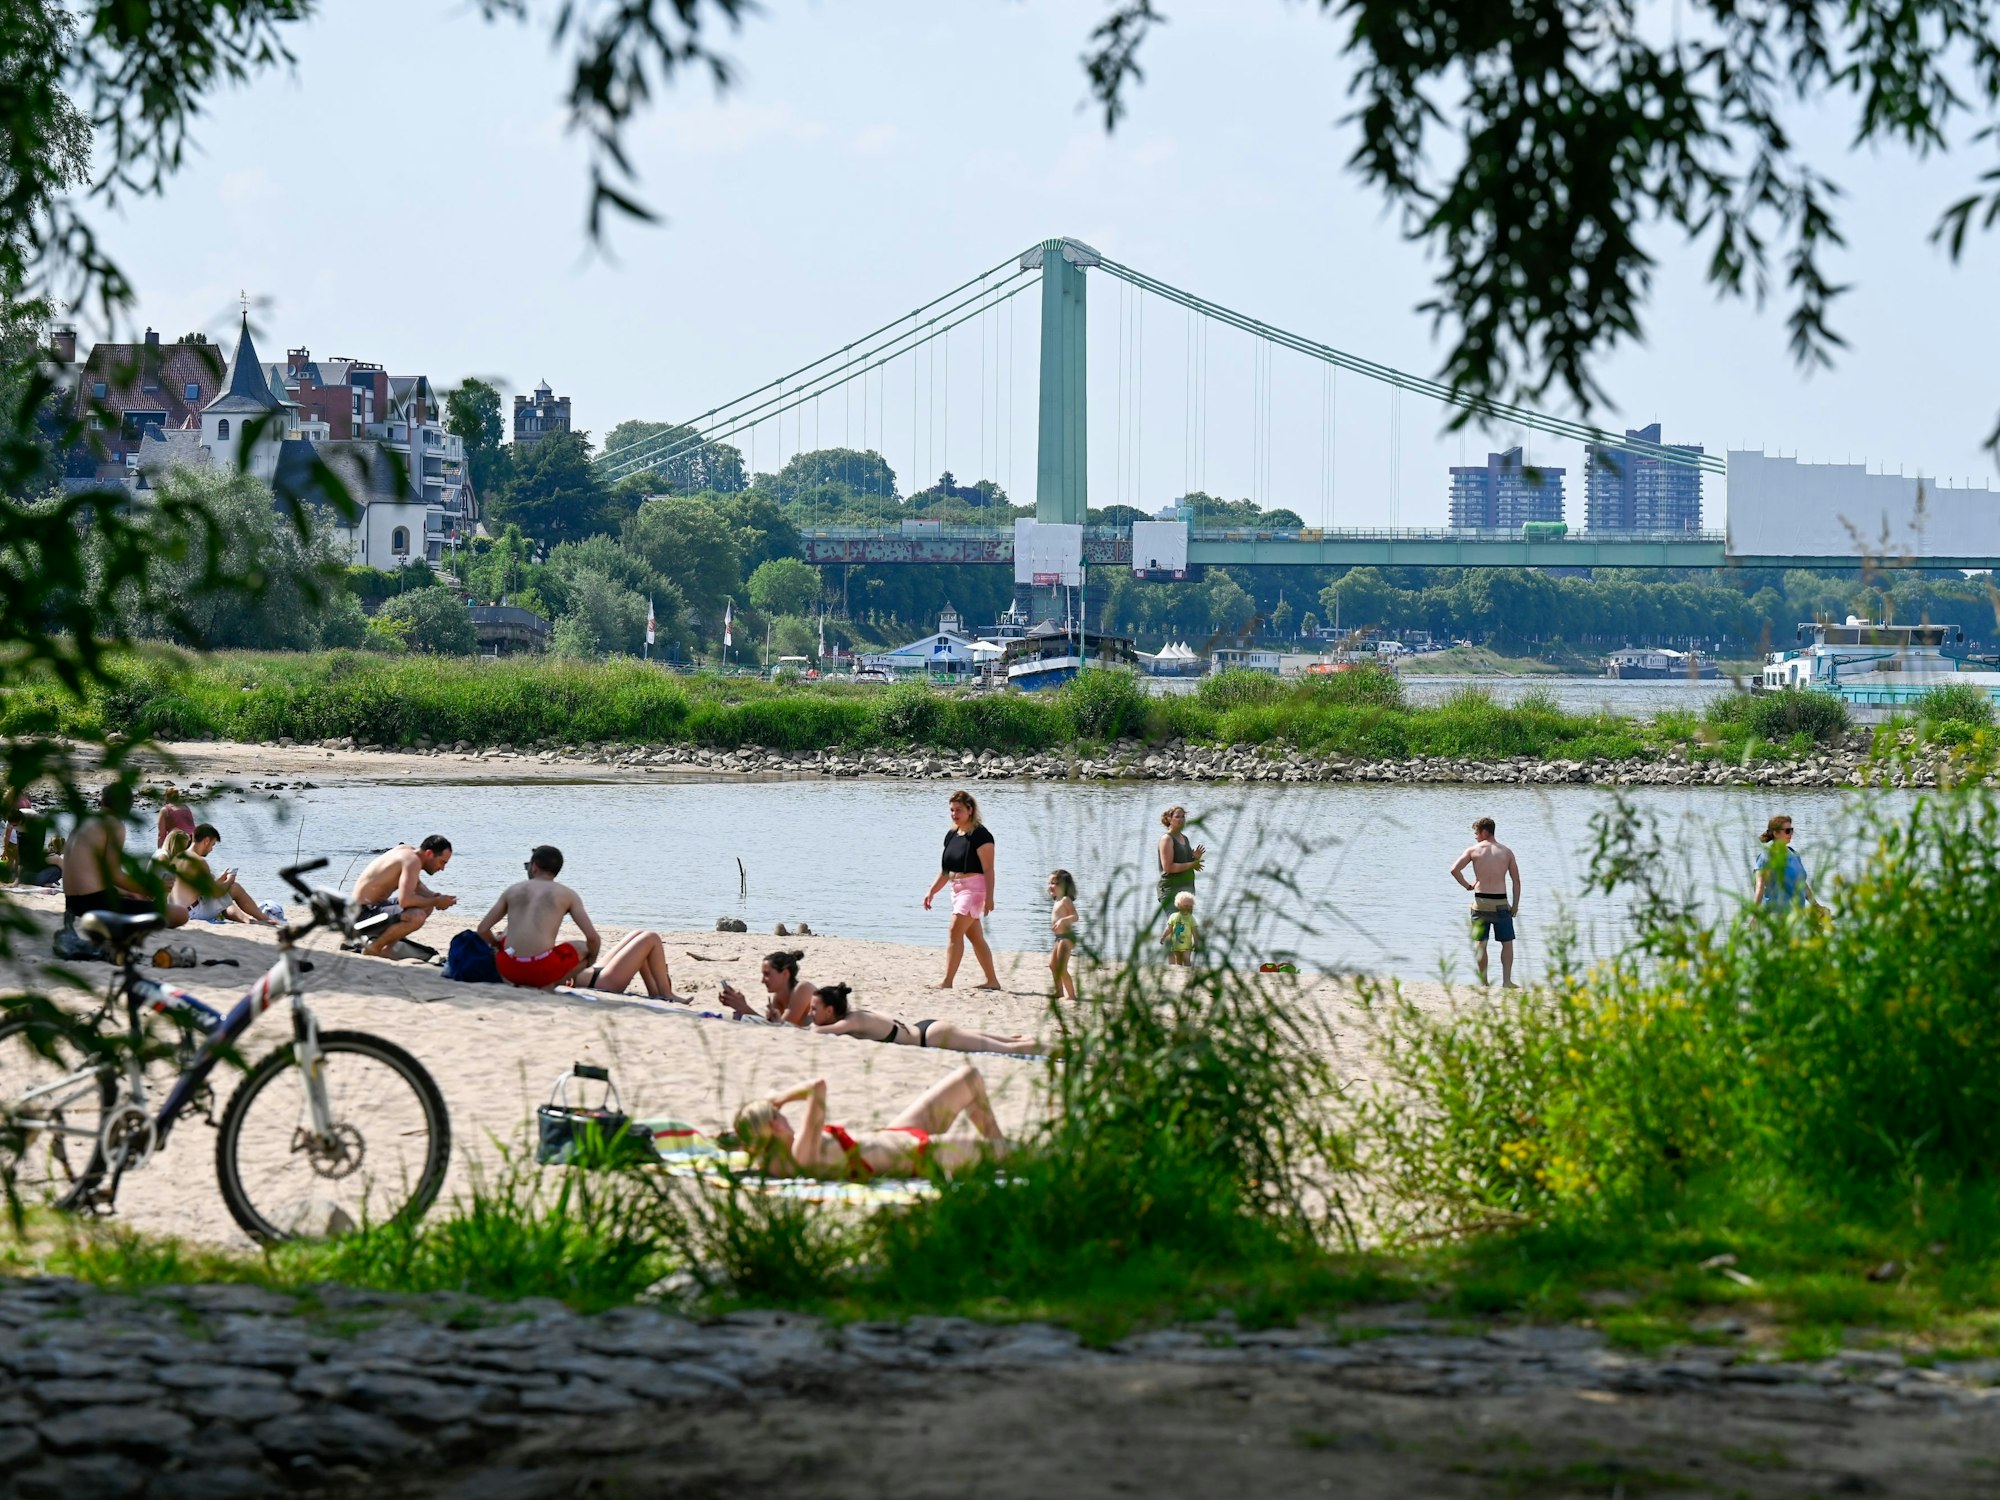 Bei schönem Wetter sonnen sich die Menschen an den Stränden des Rheins und suchen Abkühlung im Fluss.